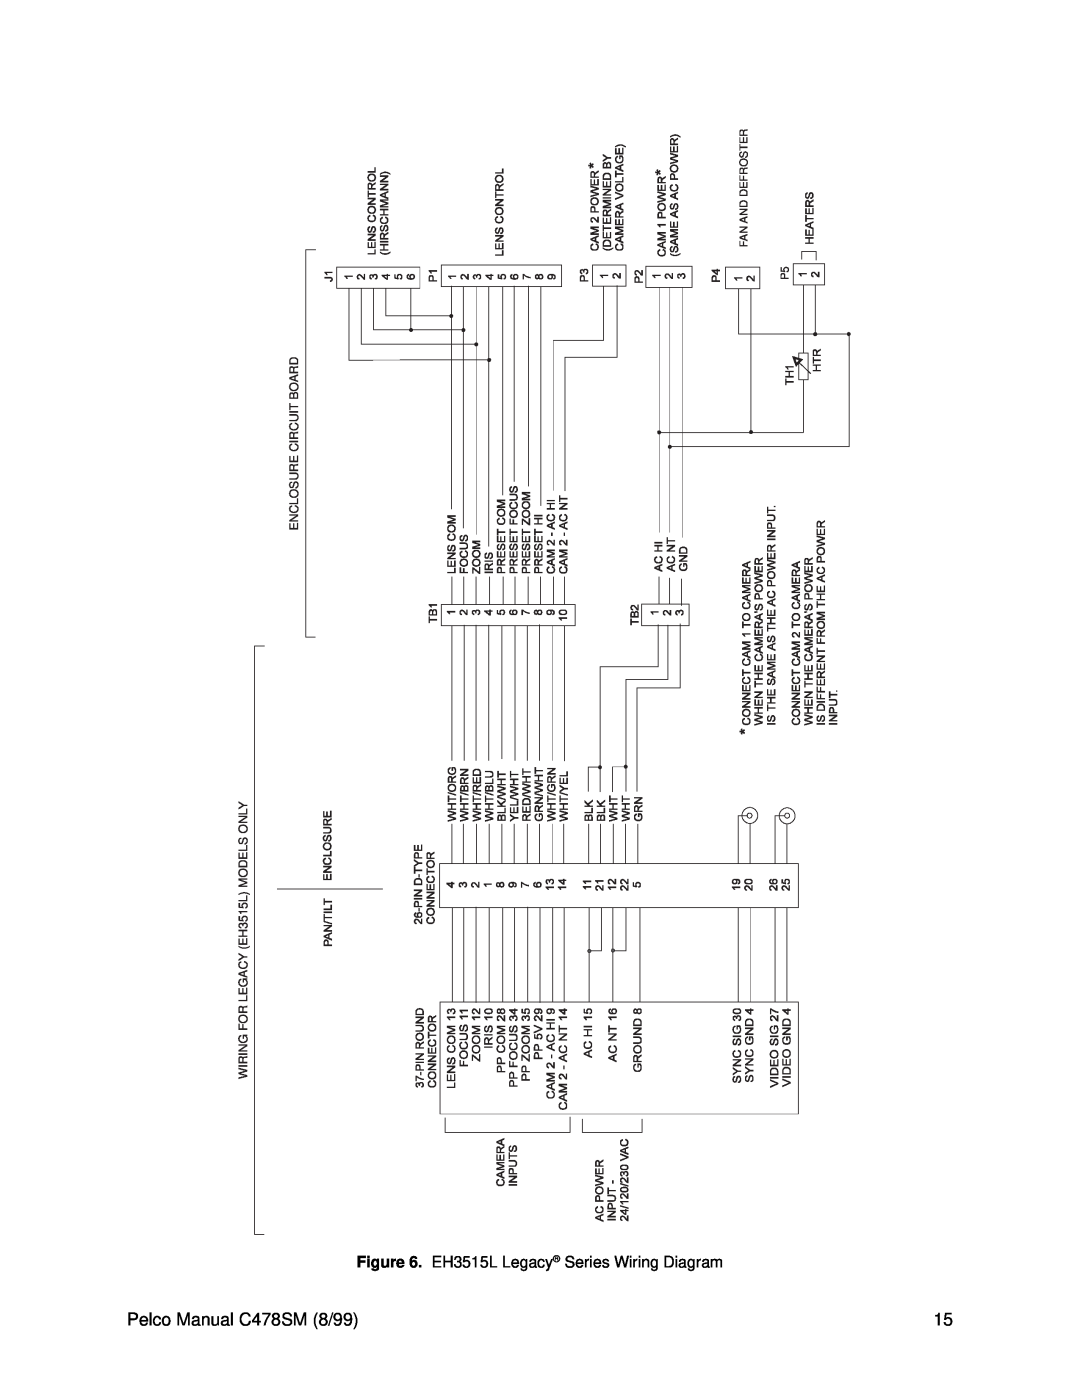 Pelco EH3500 service manual Pelco Manual C478SM 8/99, EH3515L Legacy Series Wiring Diagram 